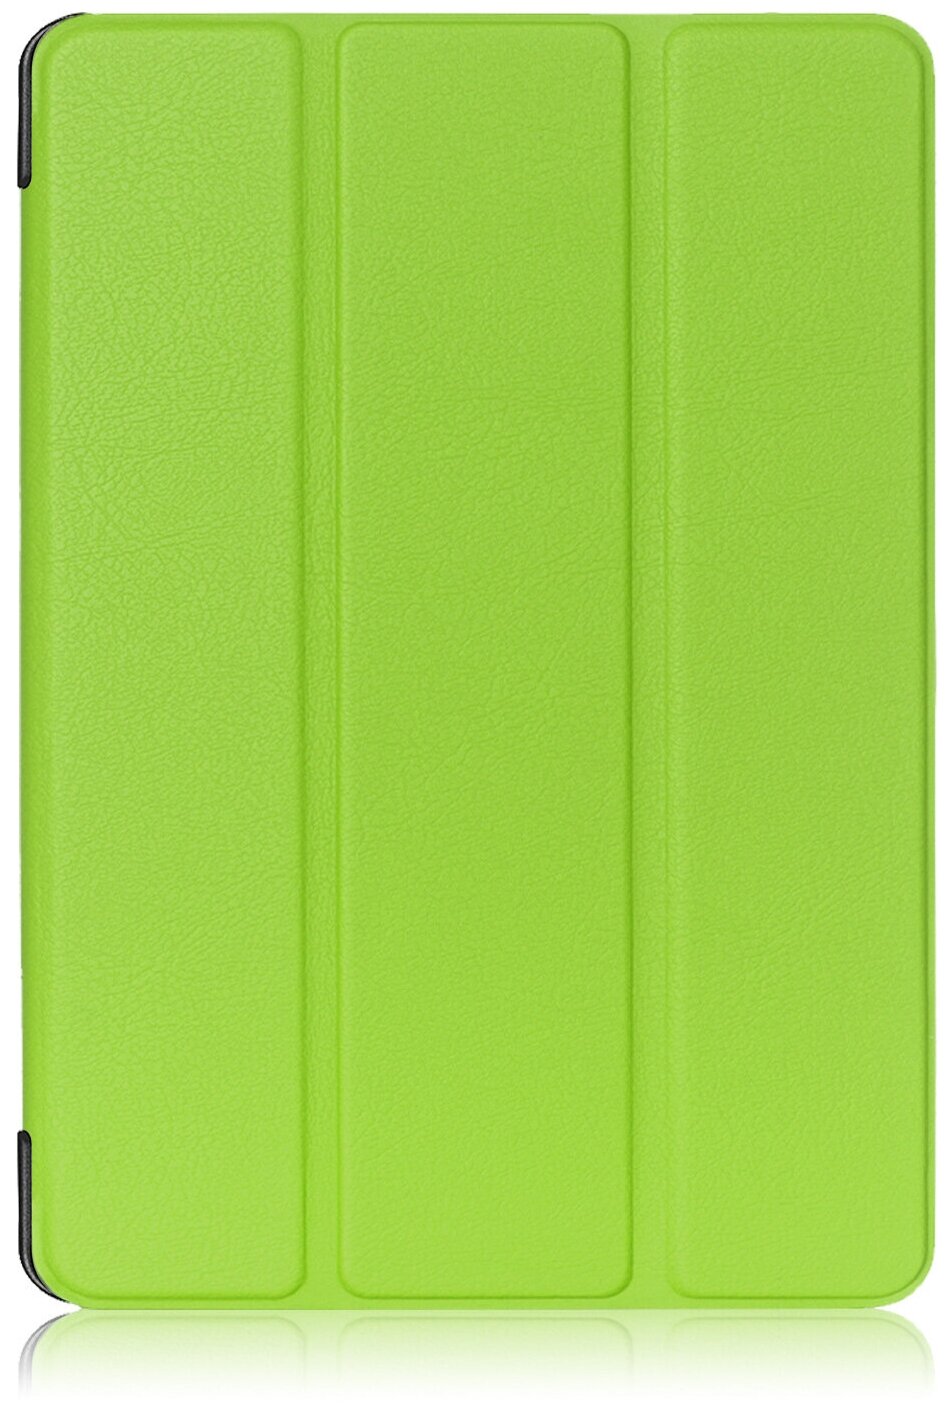 Чехол-обложка MyPads для Lenovo Tab 4 8 TB-8504X/N/F тонкий умный кожаный на пластиковой основе с трансформацией в подставку зеленый